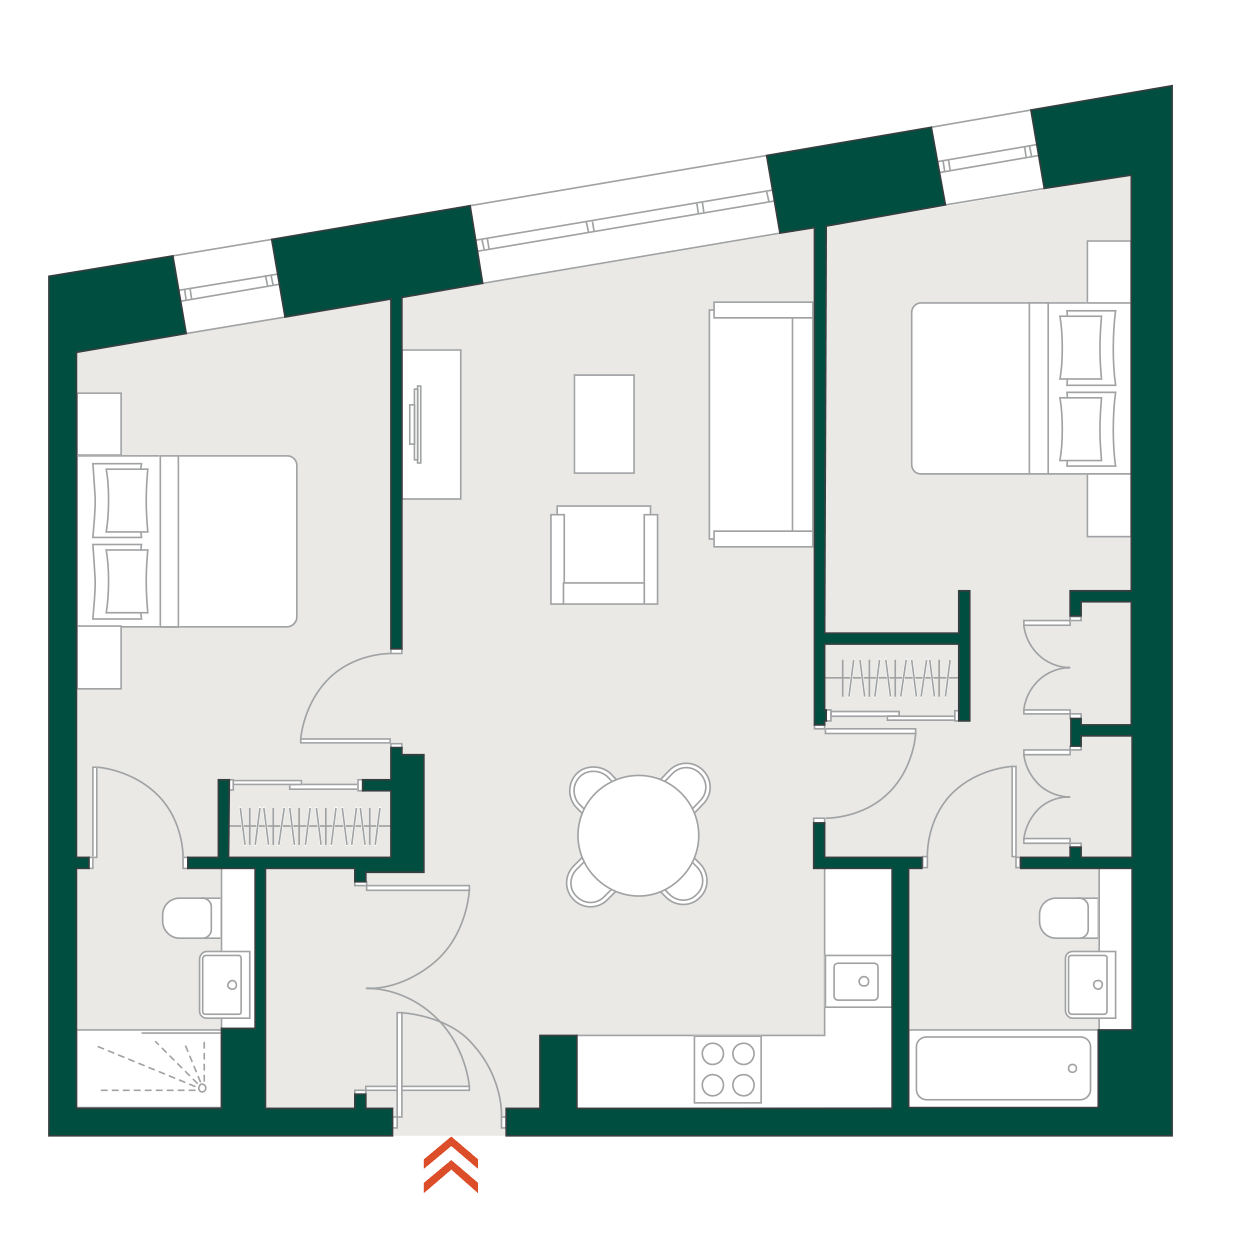 Blackhorse Mills 2 Bedroom WYG & floor plan typical floor plan